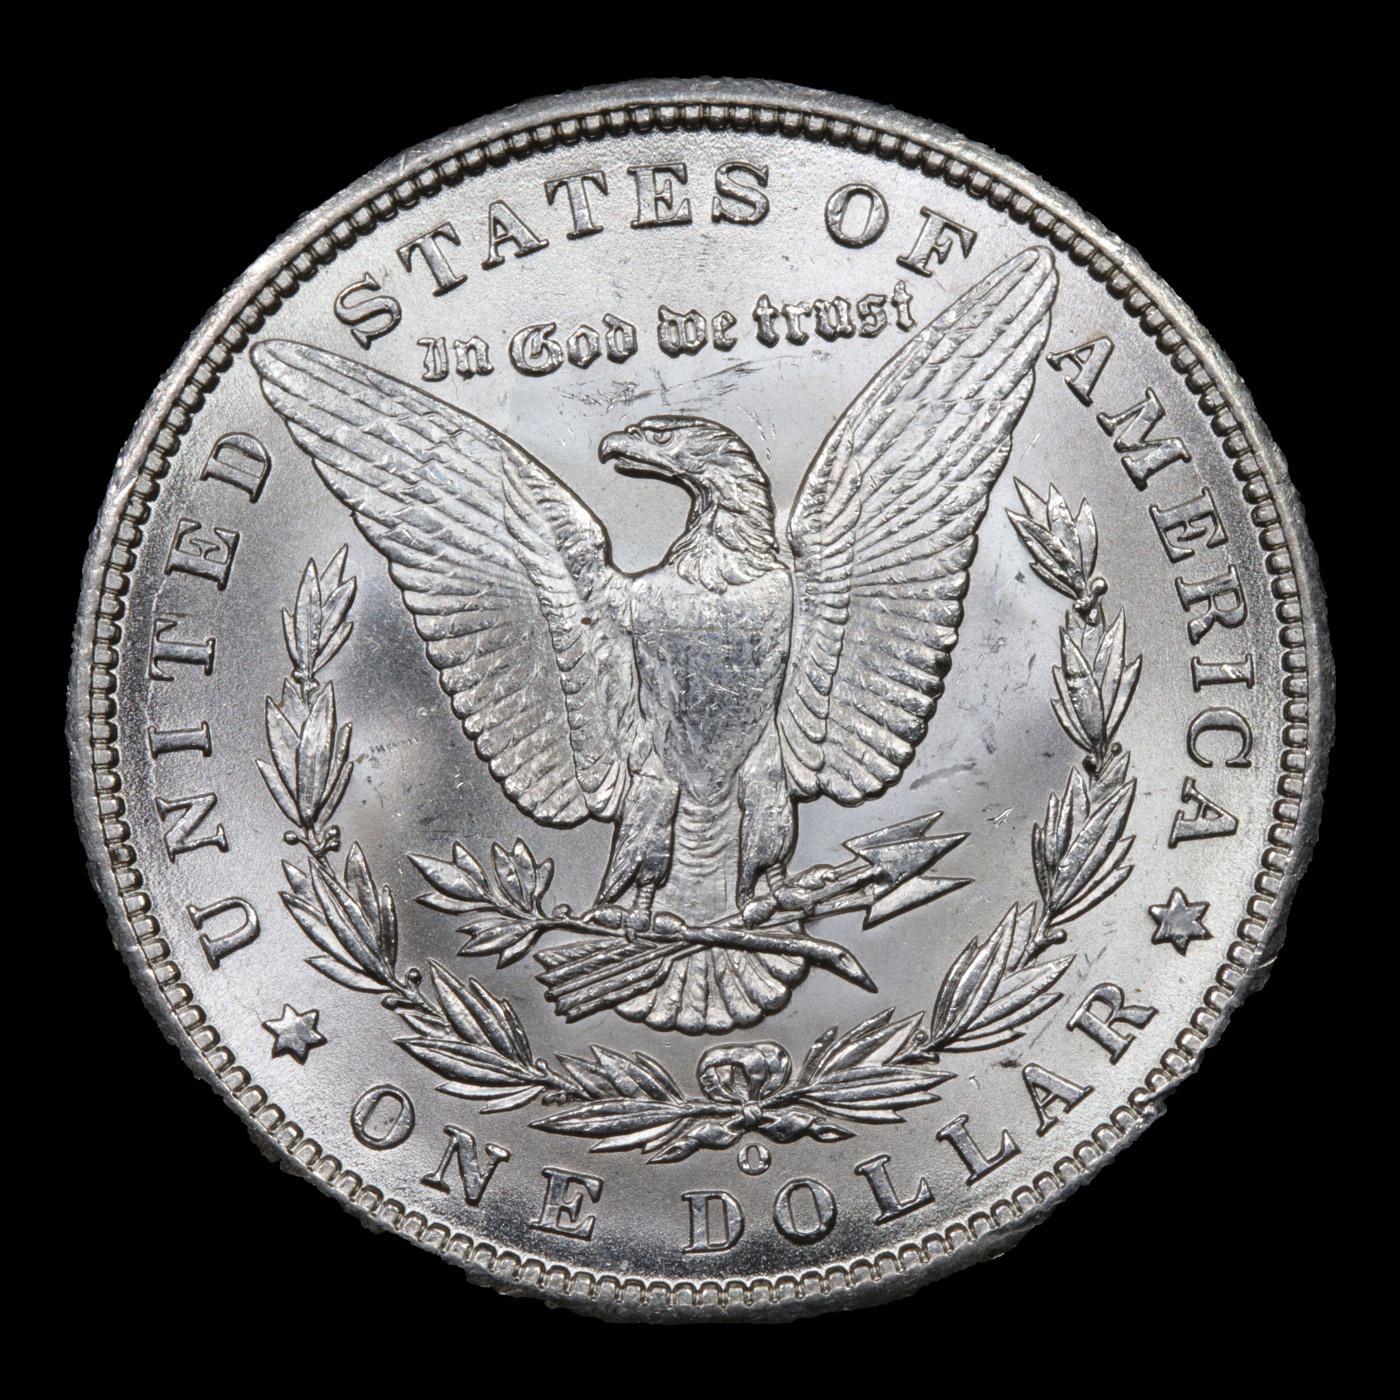 1898-o Morgan Dollar $1 Grades Choice Unc